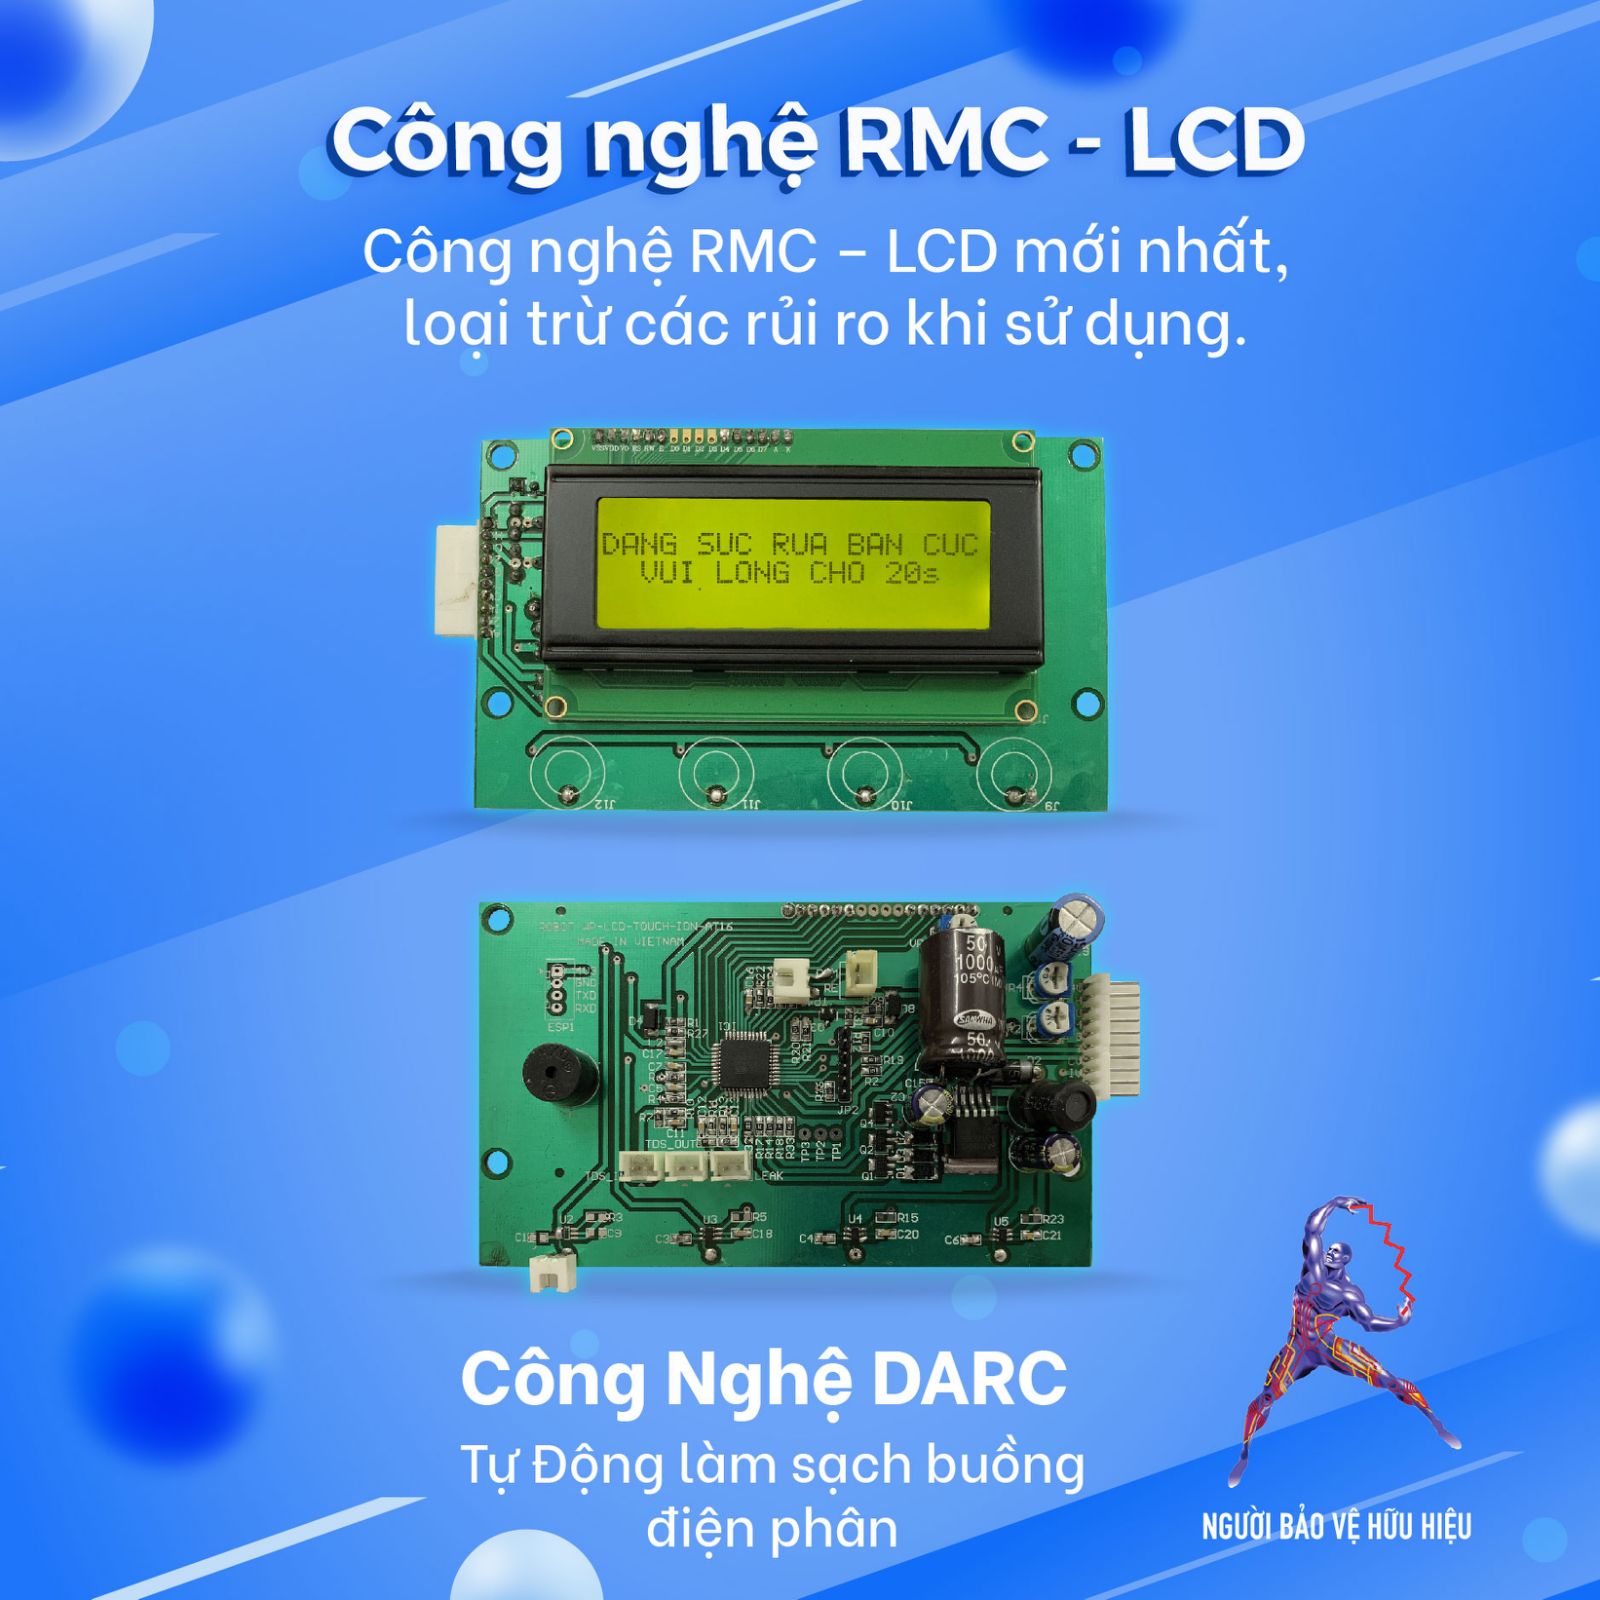 CÔNG NGHỆ RMC-LCD